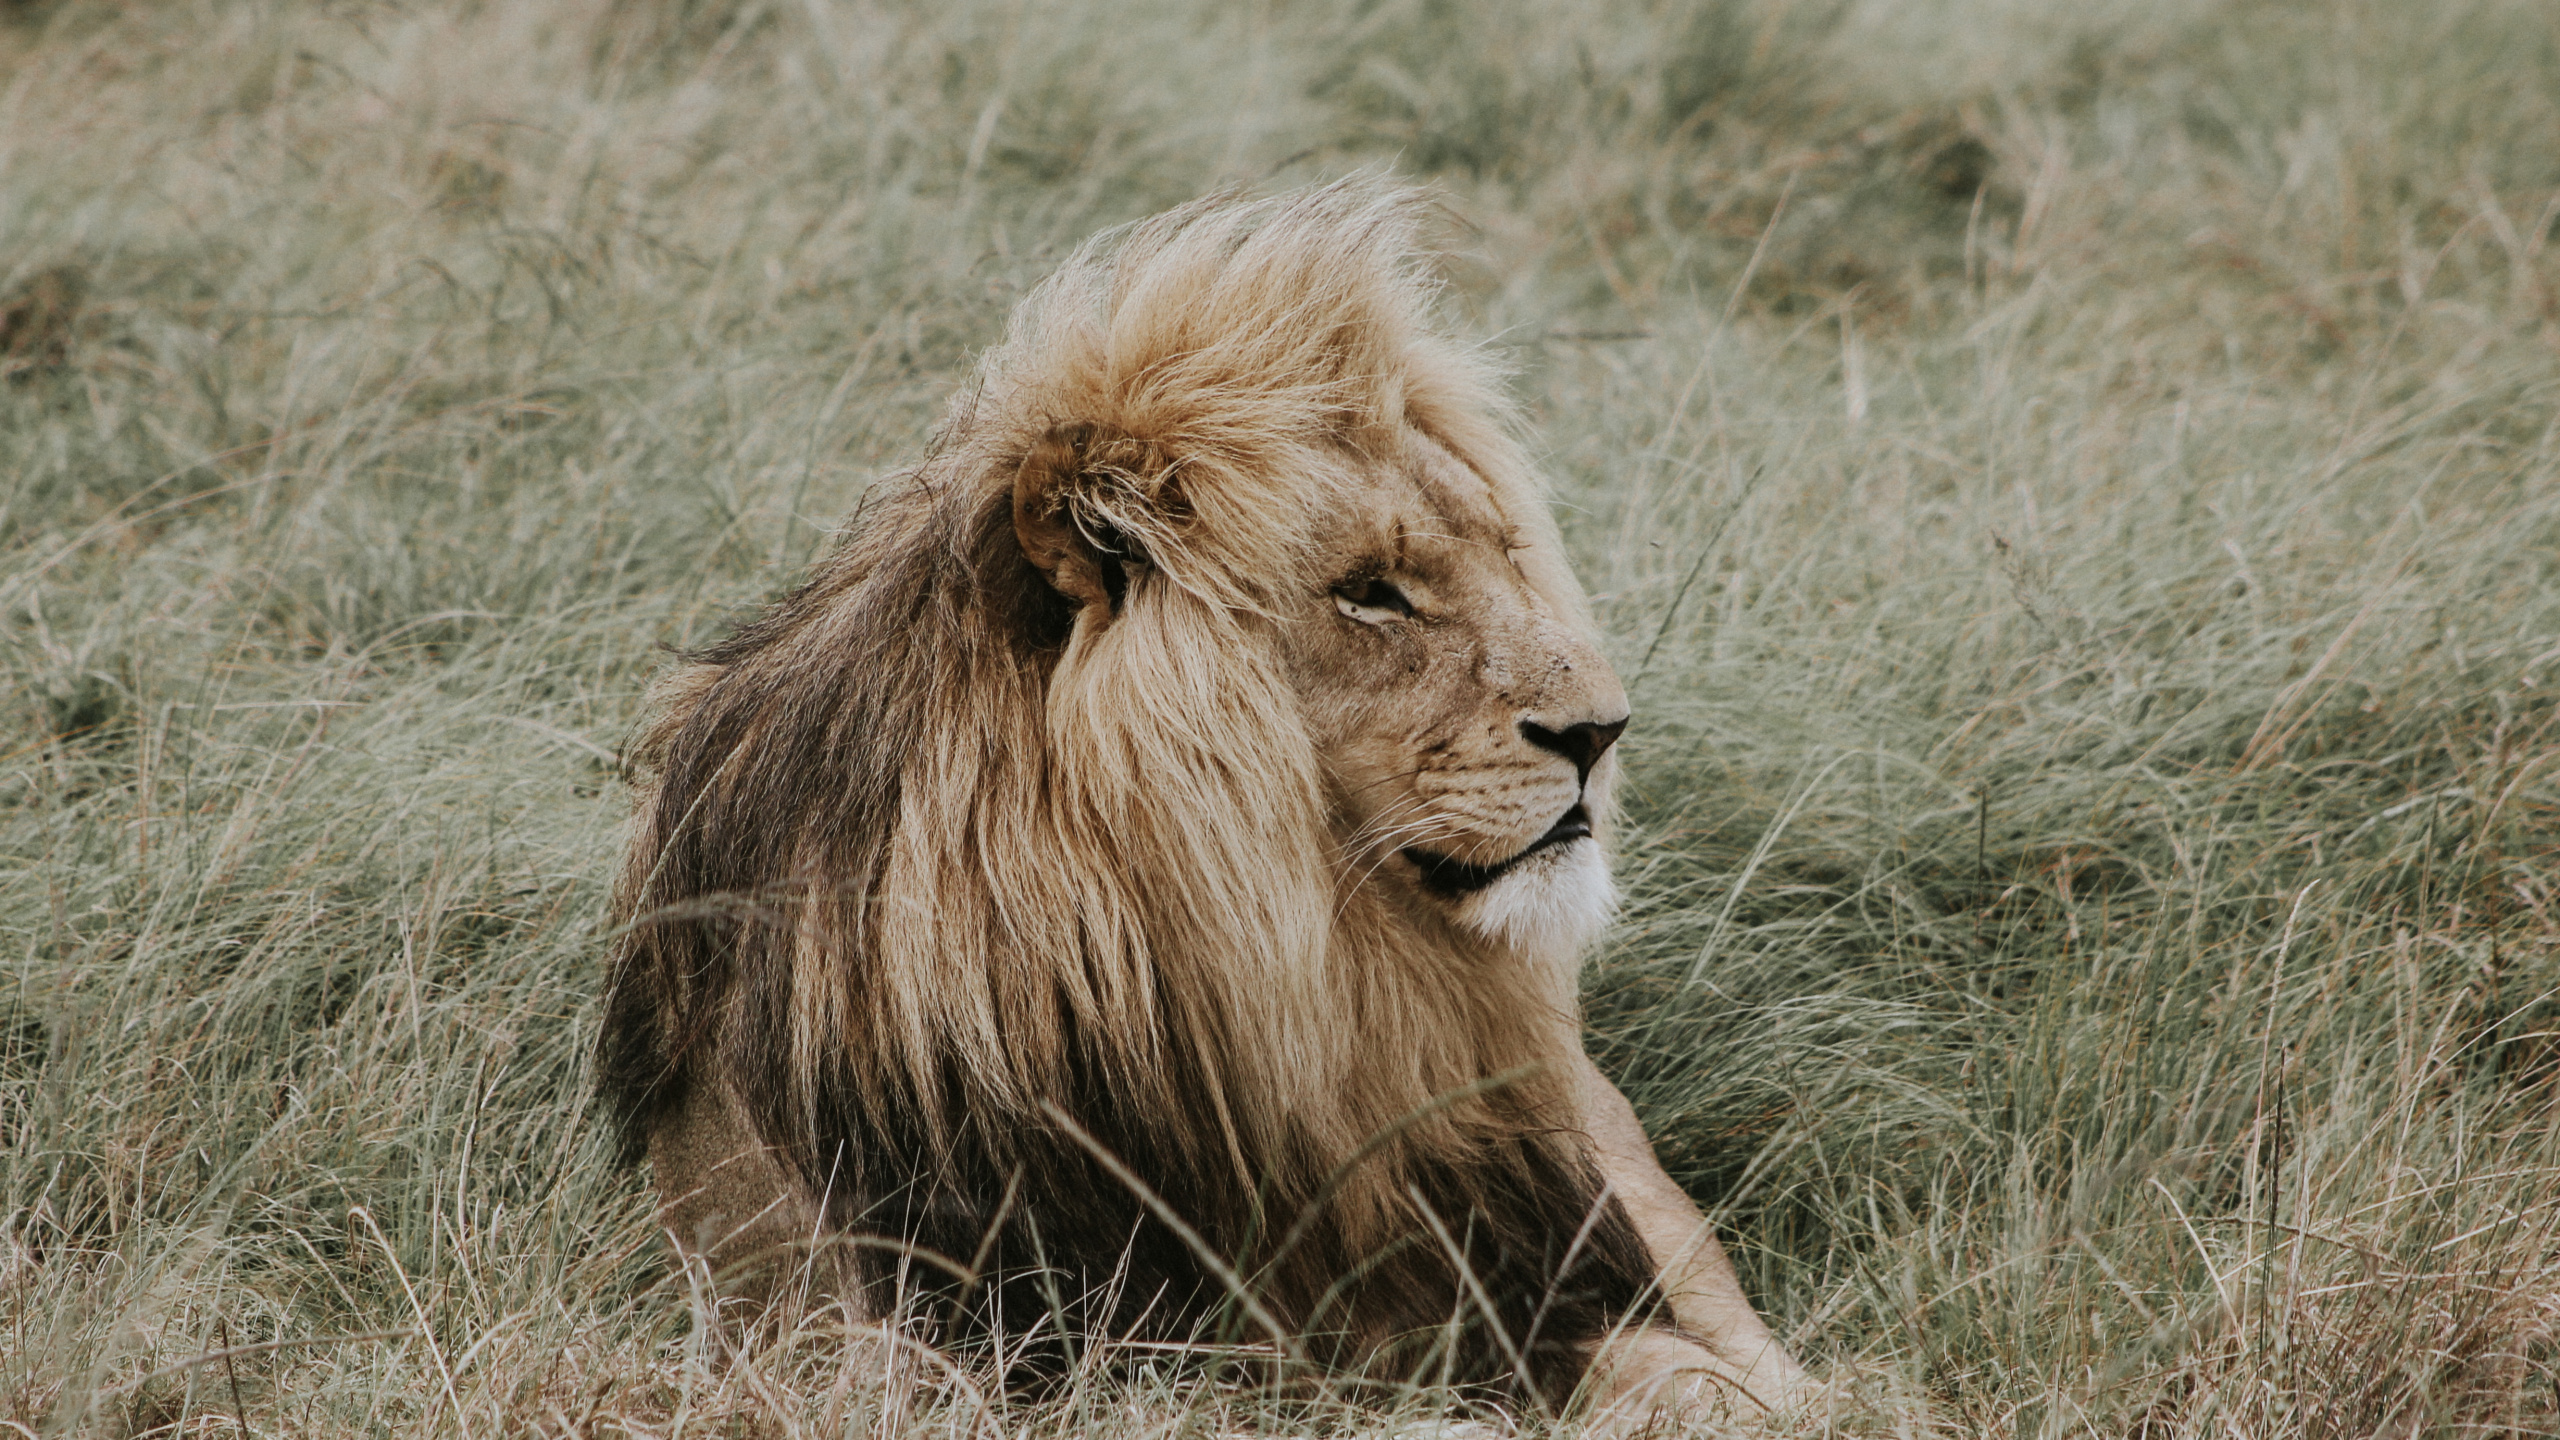 狮子, 野生动物, 马赛马的狮子, 陆地动物, 鬃毛 壁纸 2560x1440 允许